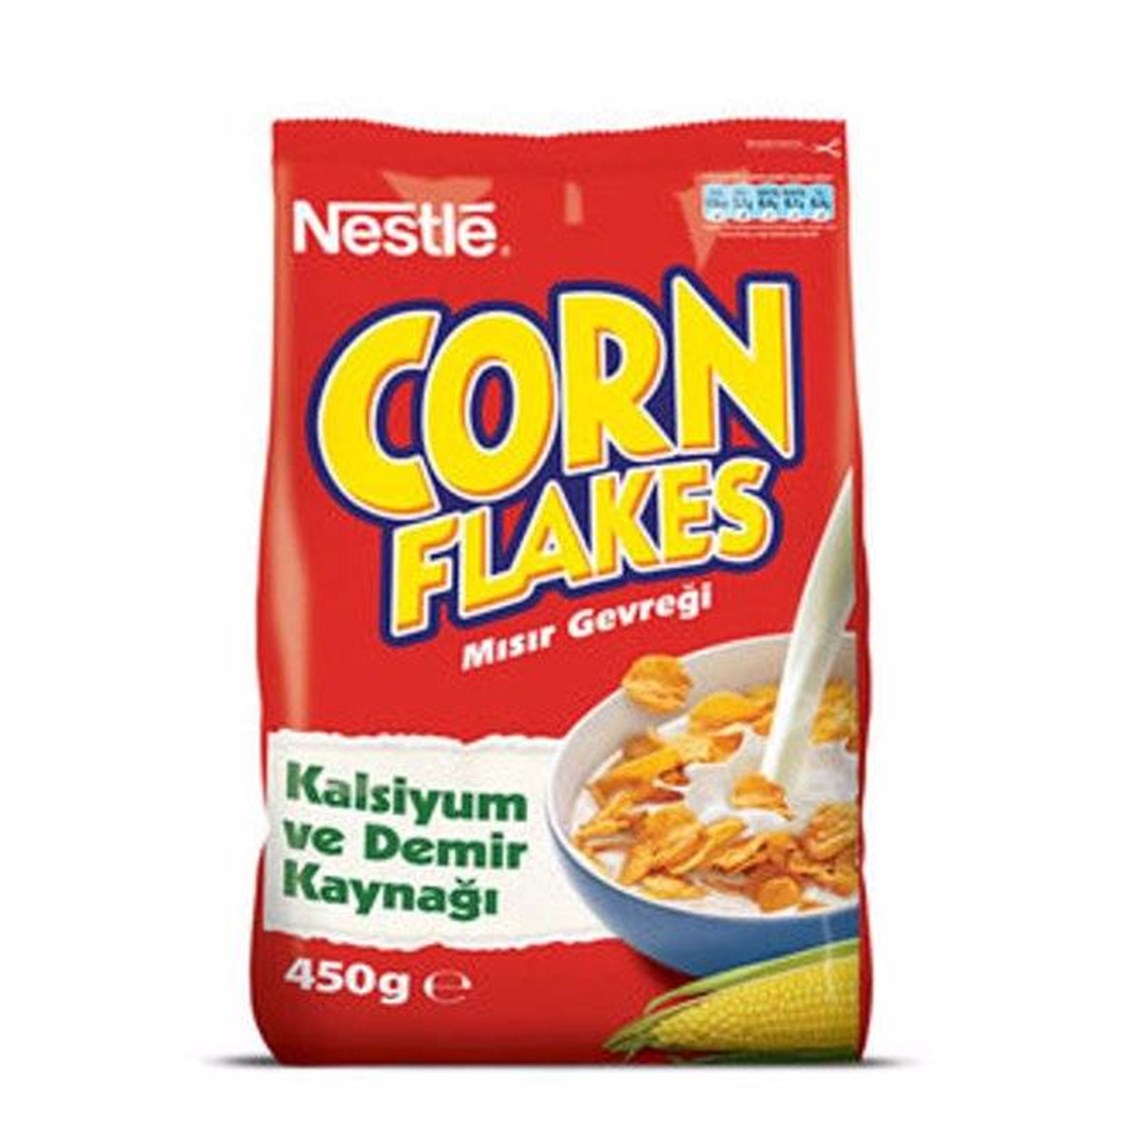 Nestle Gold Corn Flakes Mısır Gevreği 450 Gr - Onur Market